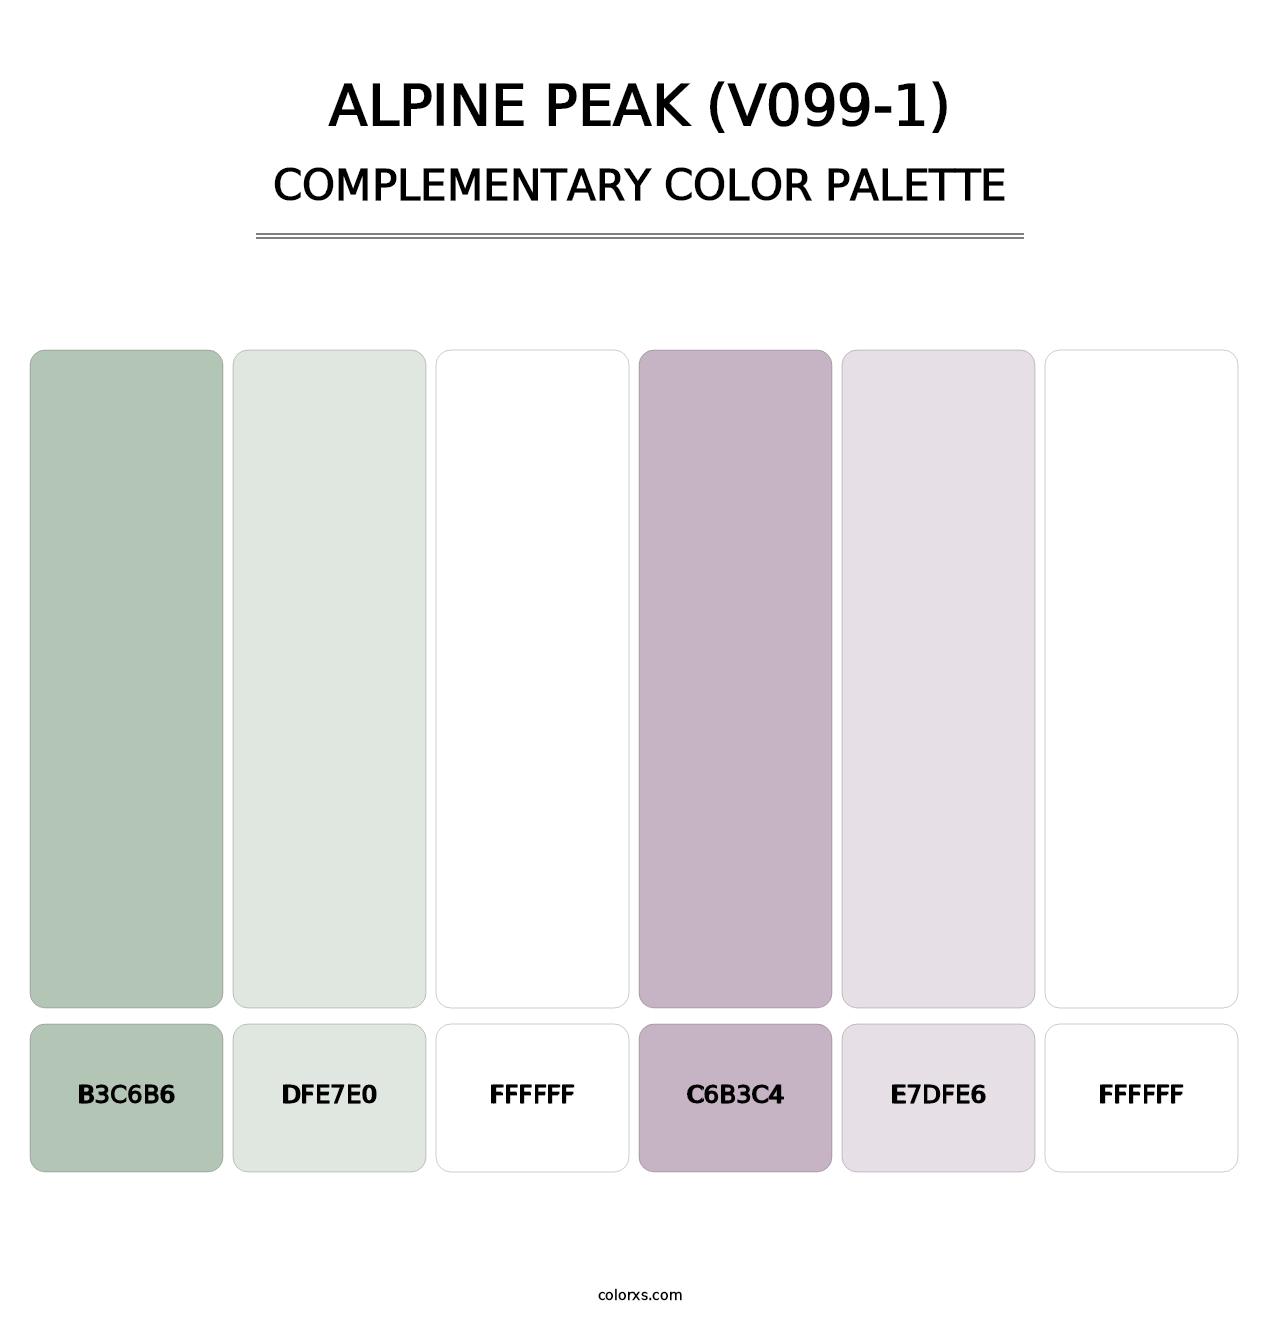 Alpine Peak (V099-1) - Complementary Color Palette